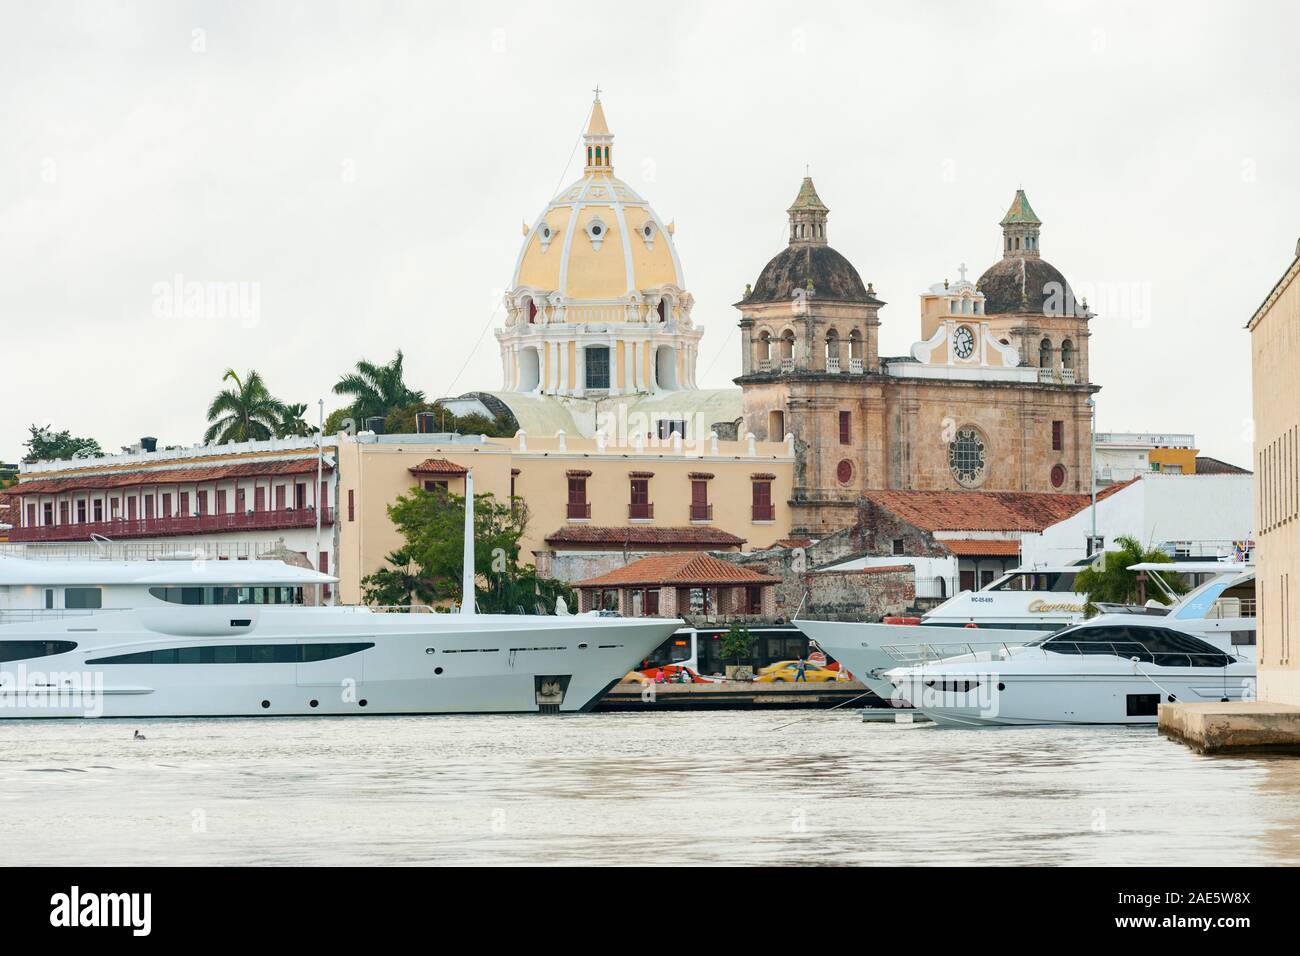 Vue de bateaux amarrés aux côtés les bâtiments historiques de la vieille ville fortifiée de Cartagena en Colombie. Banque D'Images